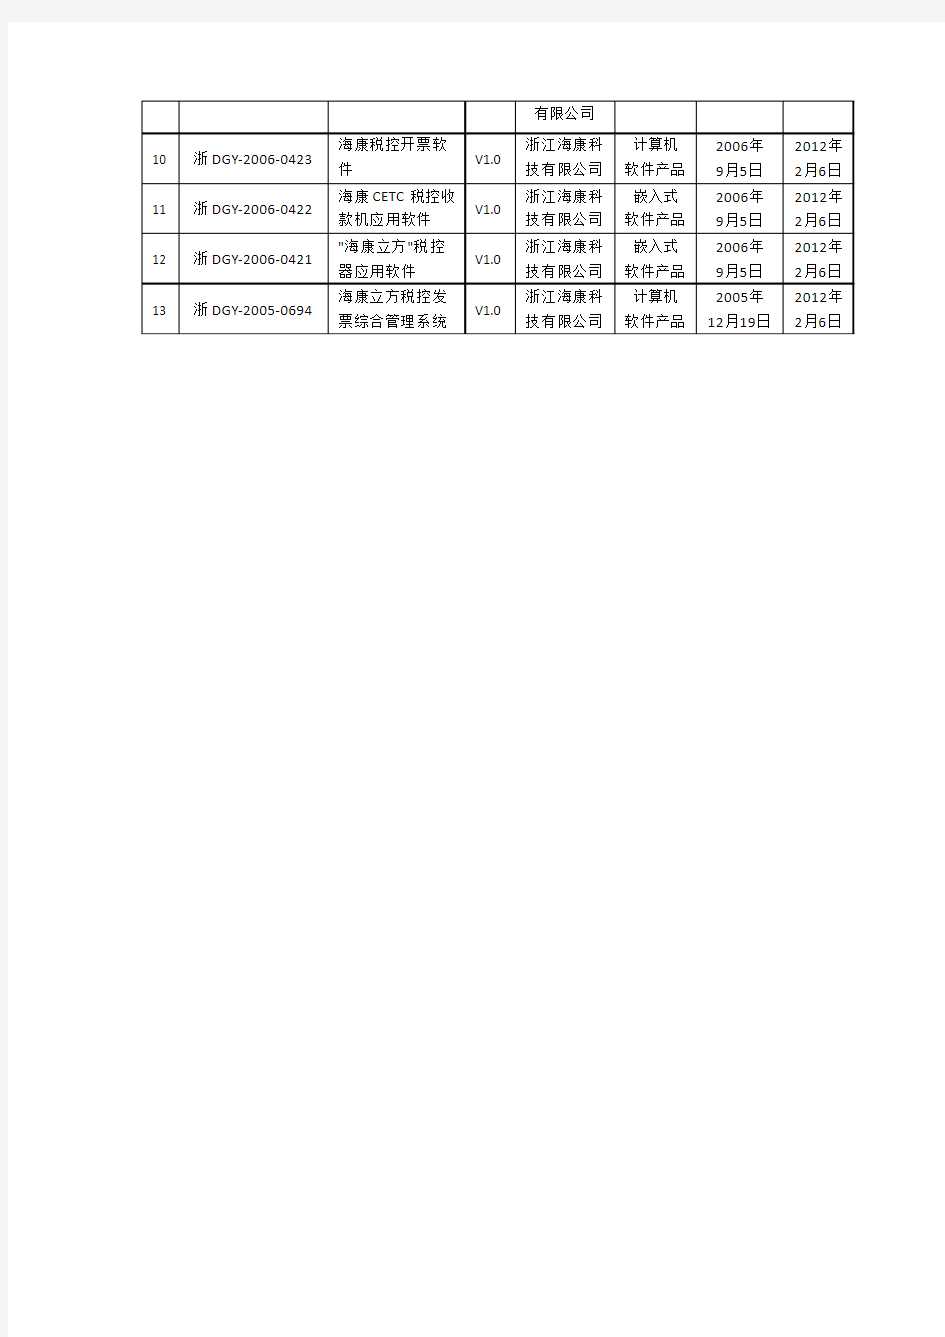 浙江省2012年度第二批软件产品延续登记名单(浙经信软件[2012]75号)